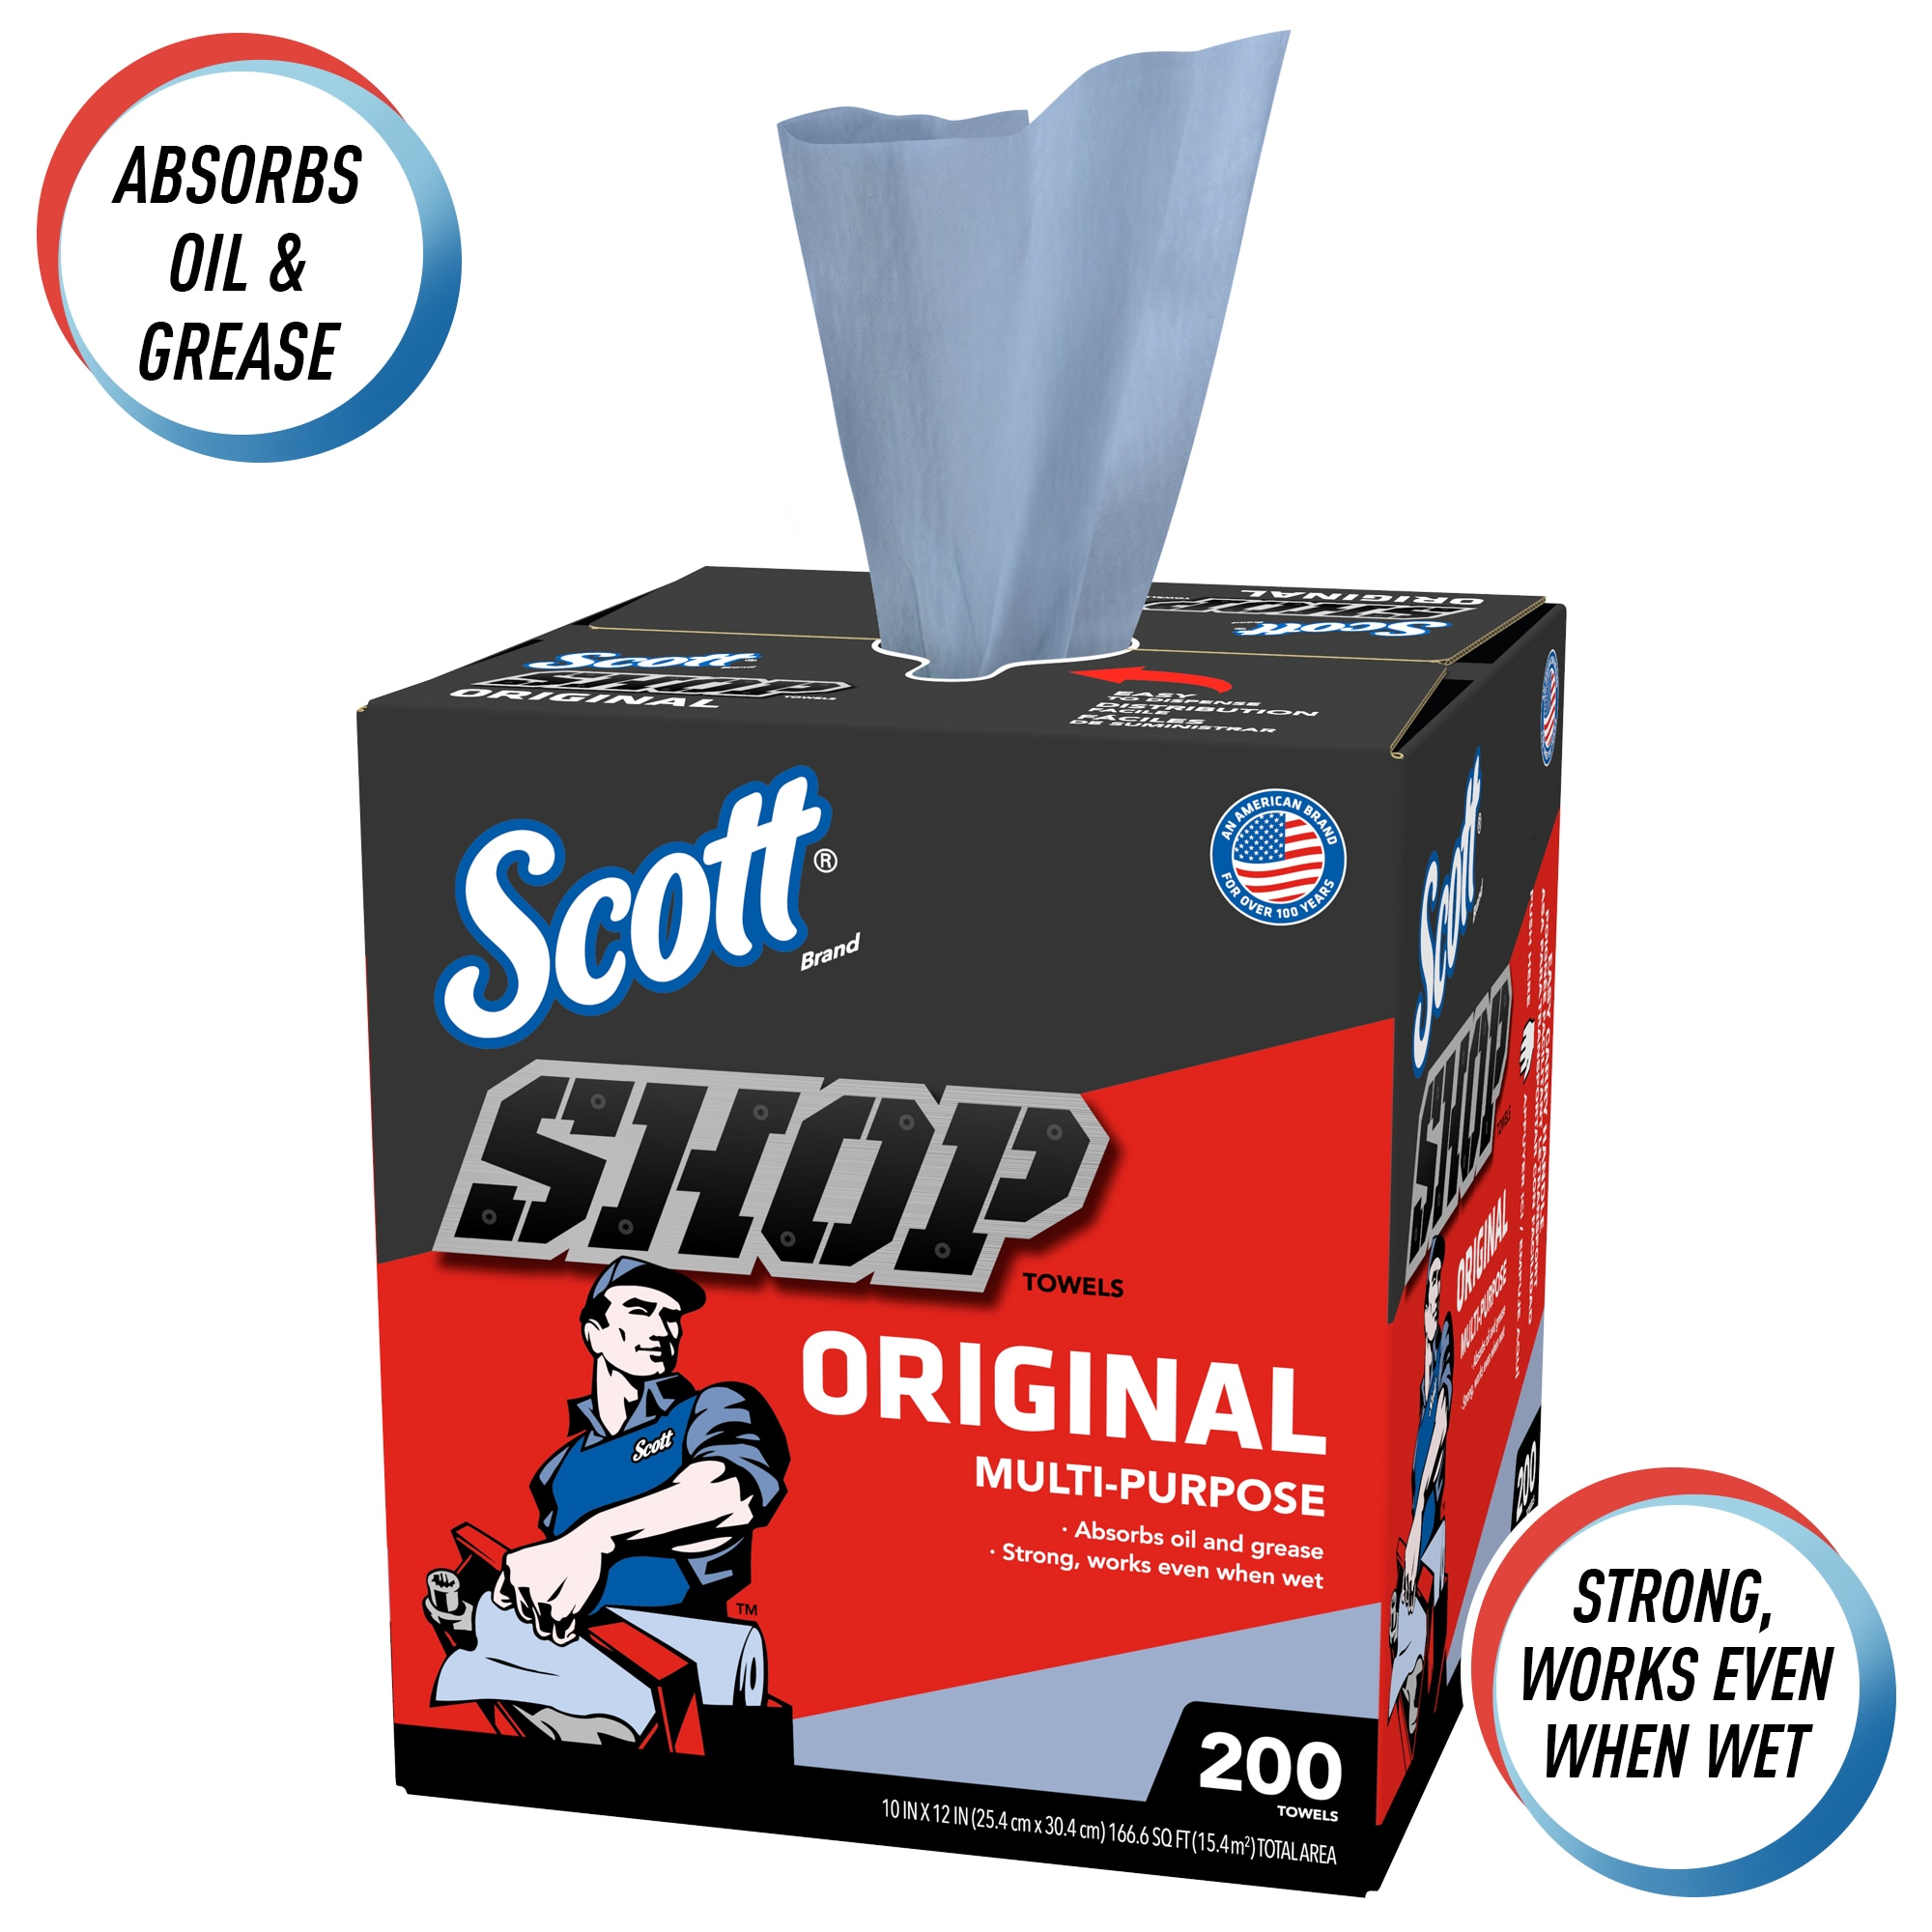 SCOTT Shop Towels 200ct Box - 20-oz Blue Shop Towel for Efficient